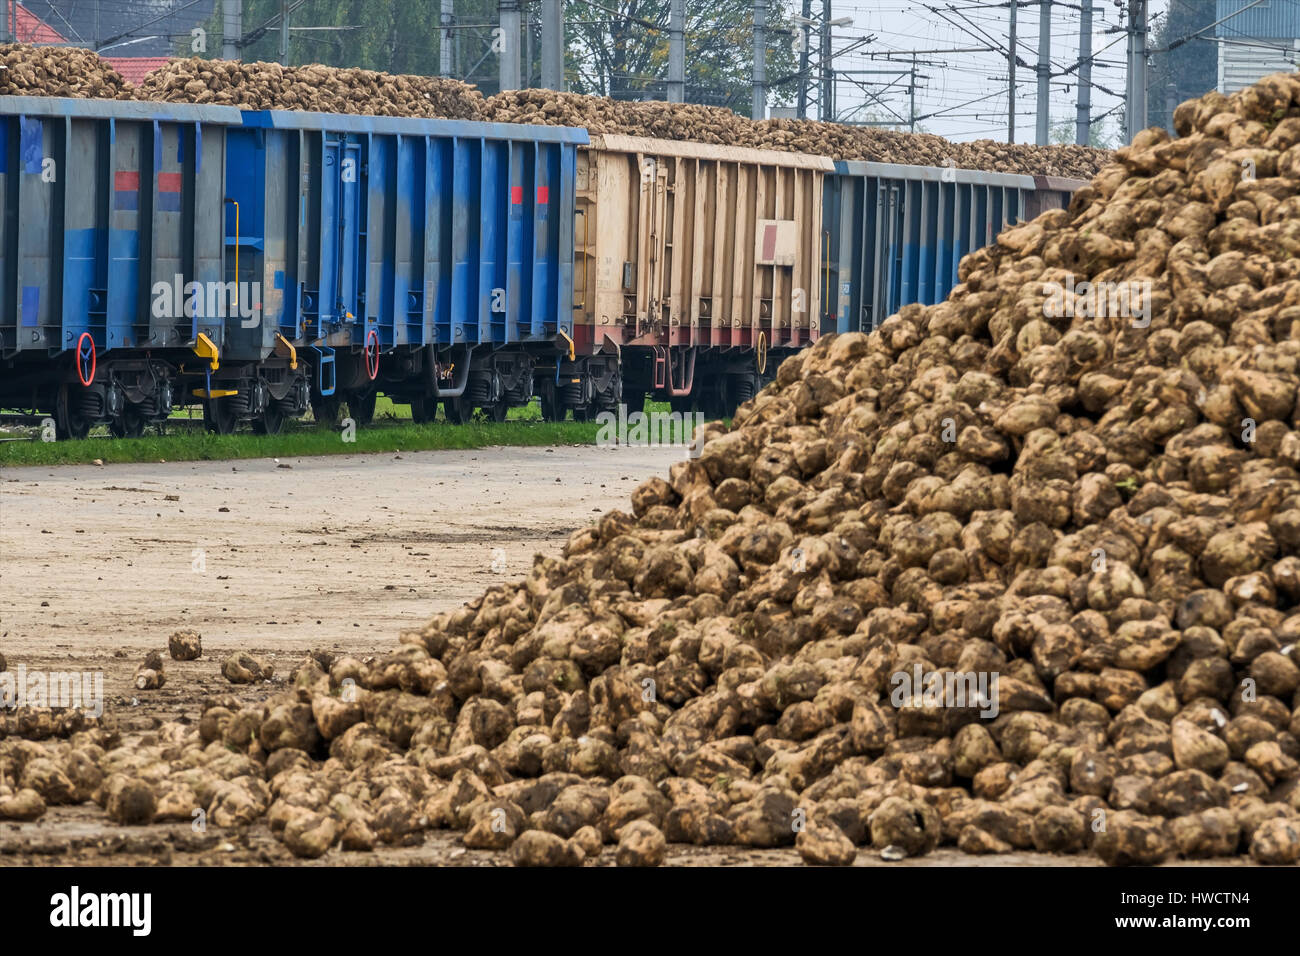 Sugar beets and goods train, symbol for harvest, logistics, growing again raw material, Zuckerrüben und Güterzug, Symbol für Ernte, Logistik, nachwach Stock Photo